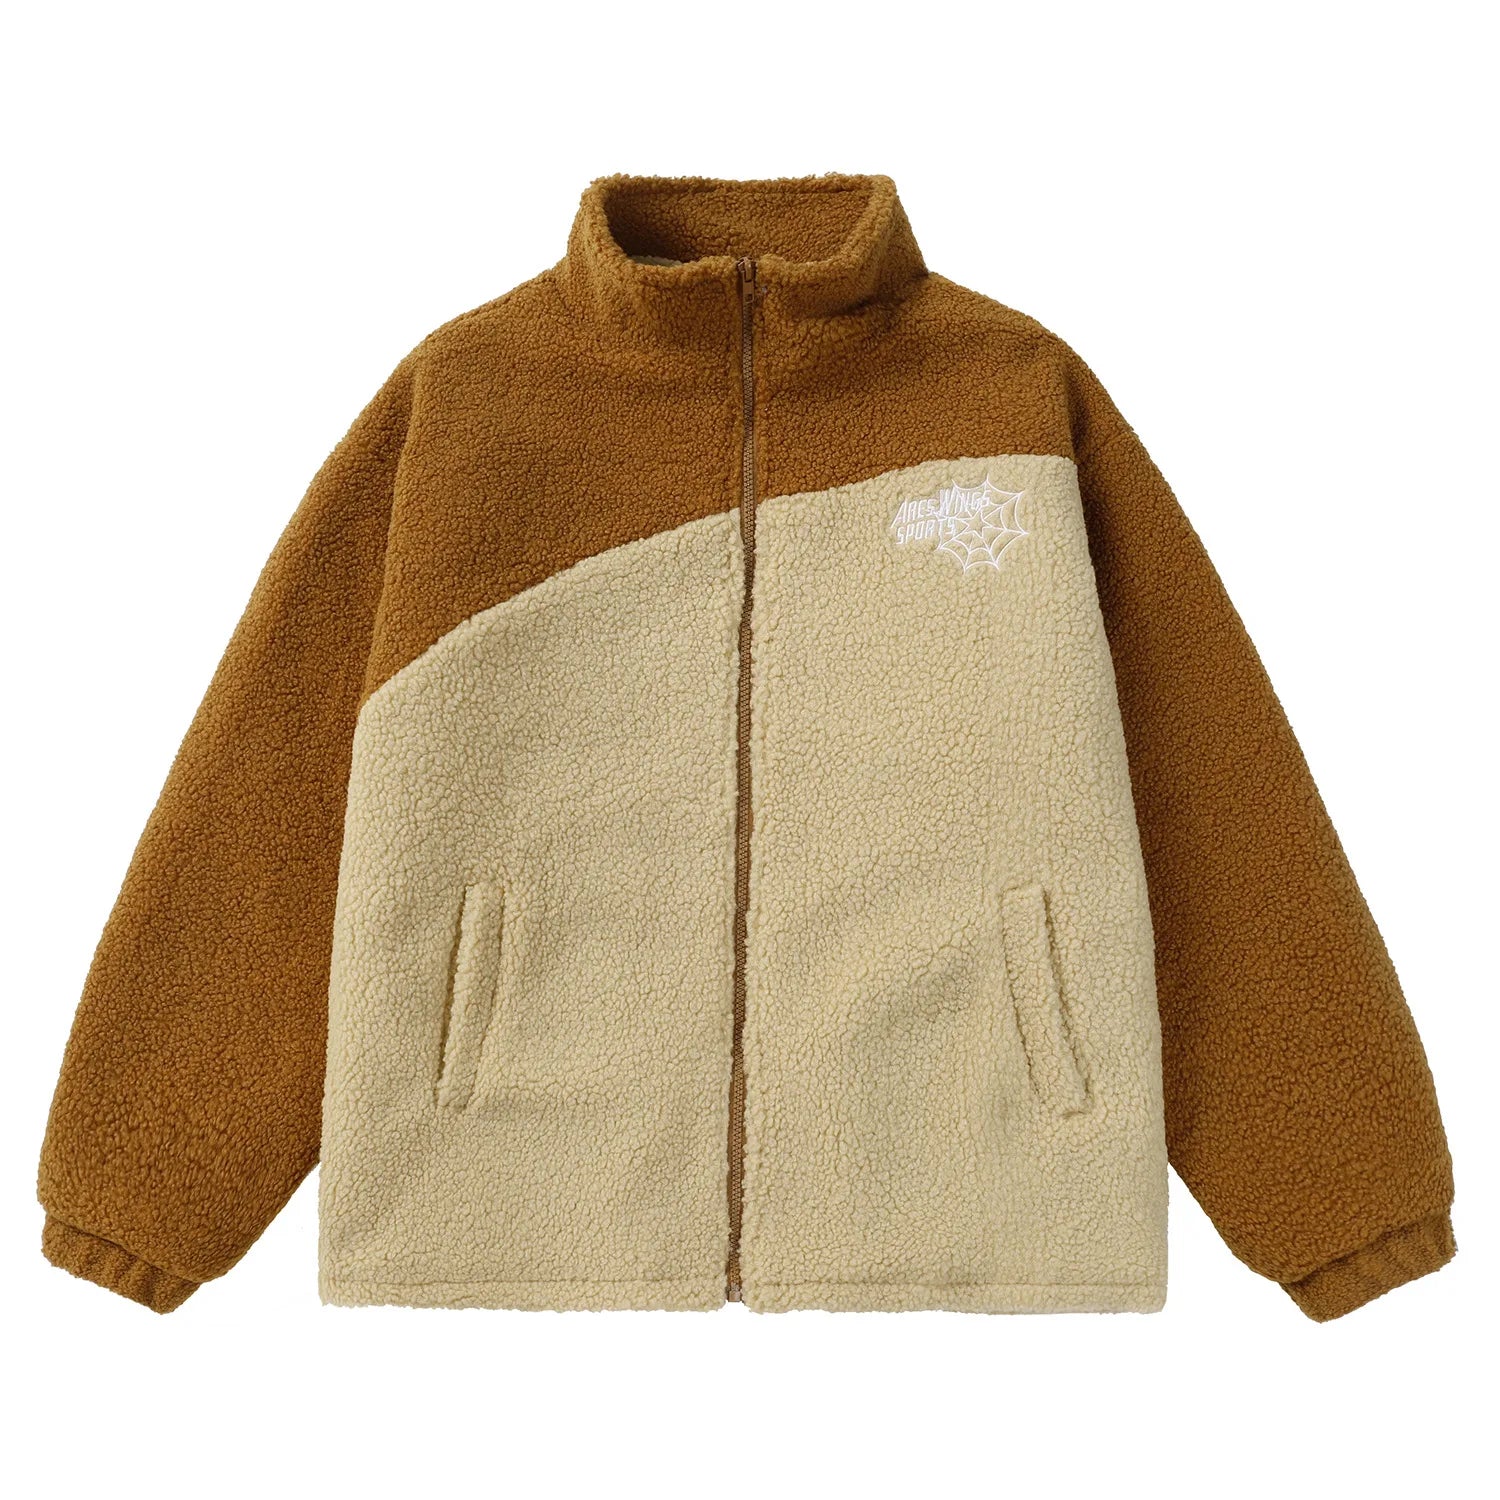 Colorblock Print Fleece Jacket